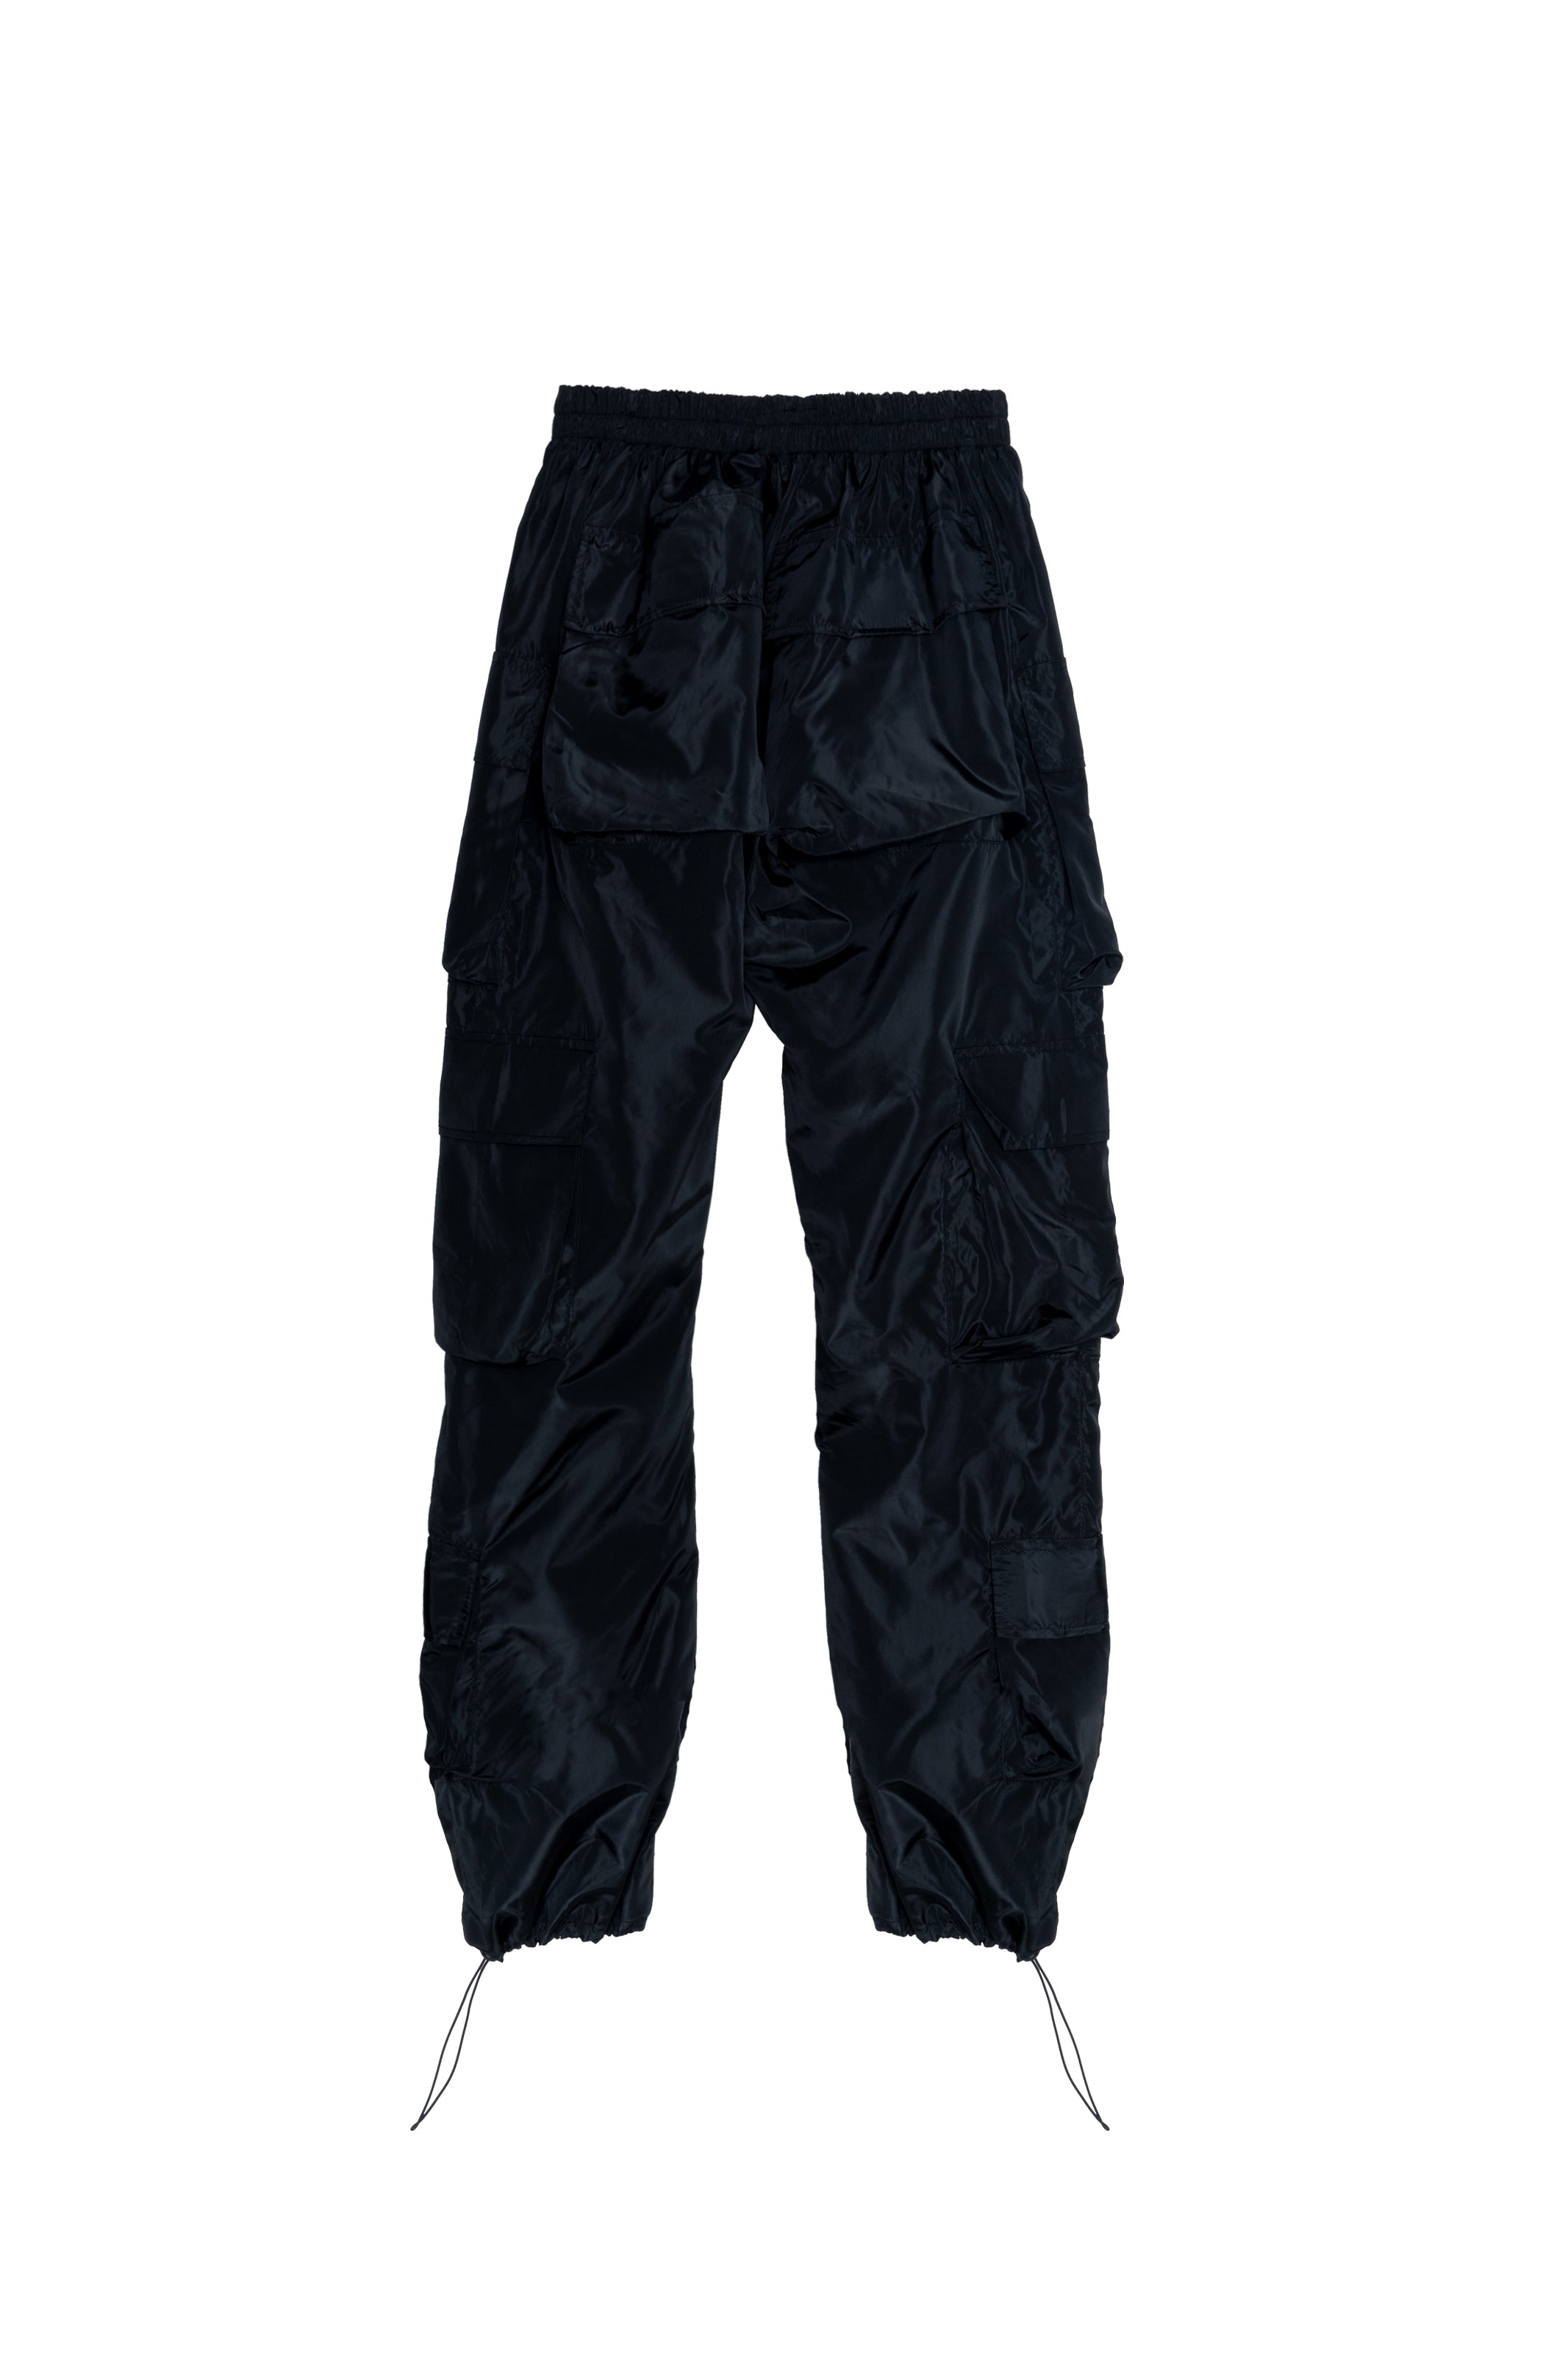 Denim cargo trousers - Black - Ladies | H&M IN